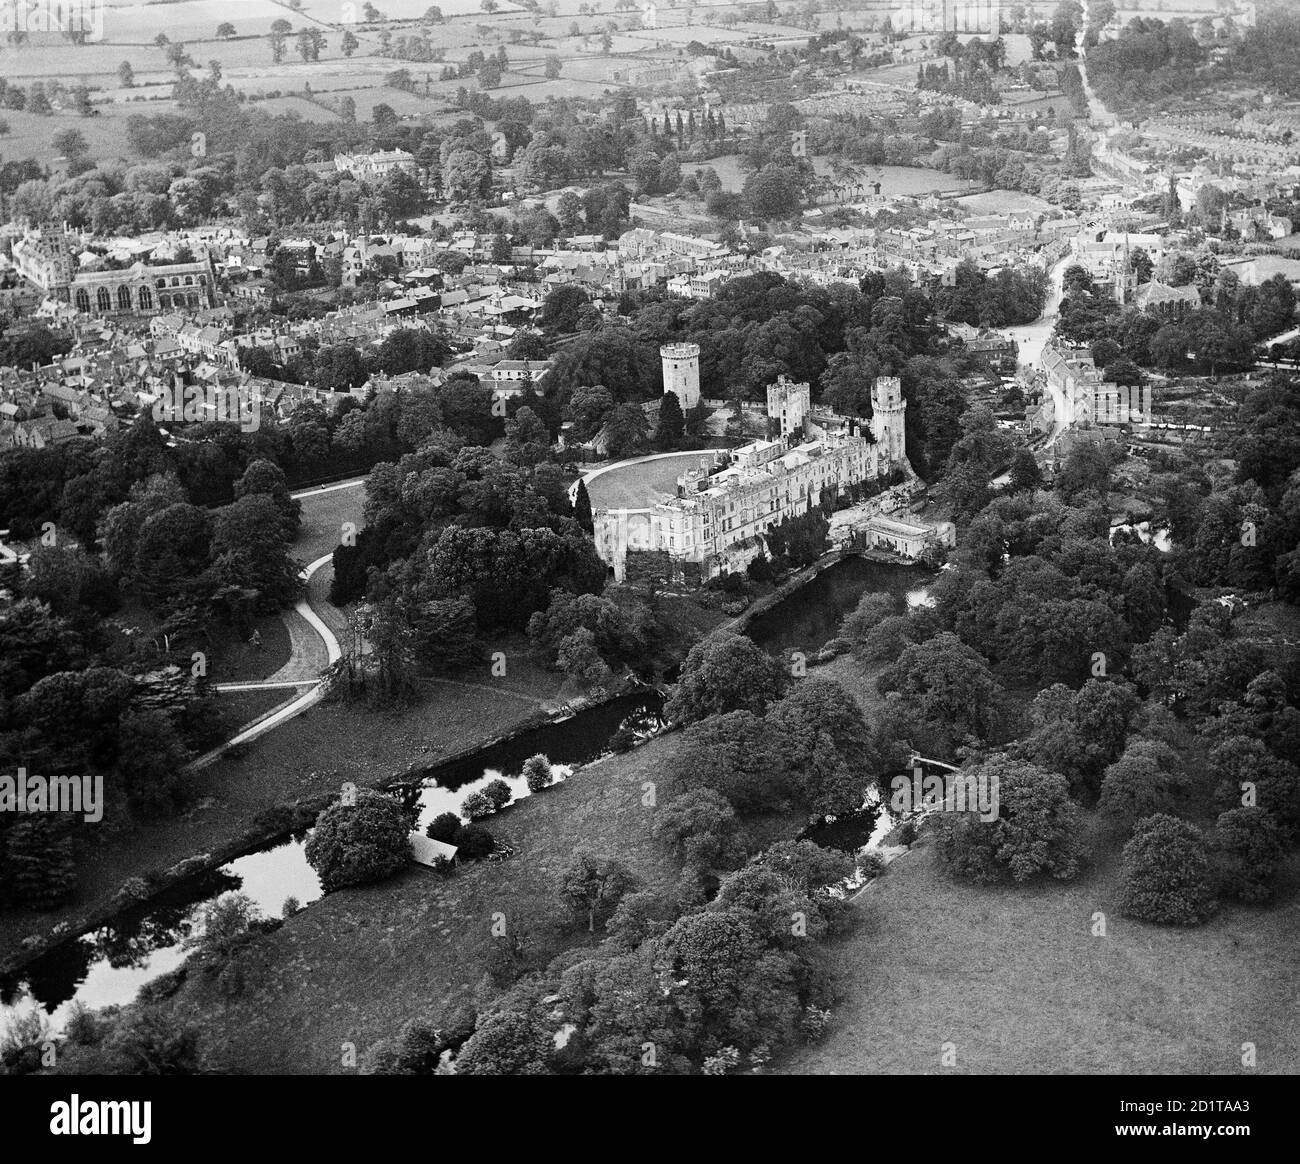 WARWICK CASTLE, Warwickshire. Vista aerea del castello e del fiume Avon in primo piano, con la chiesa e la città oltre. Fotografato nel 1920. Aerofilms Collection (vedi link). Foto Stock